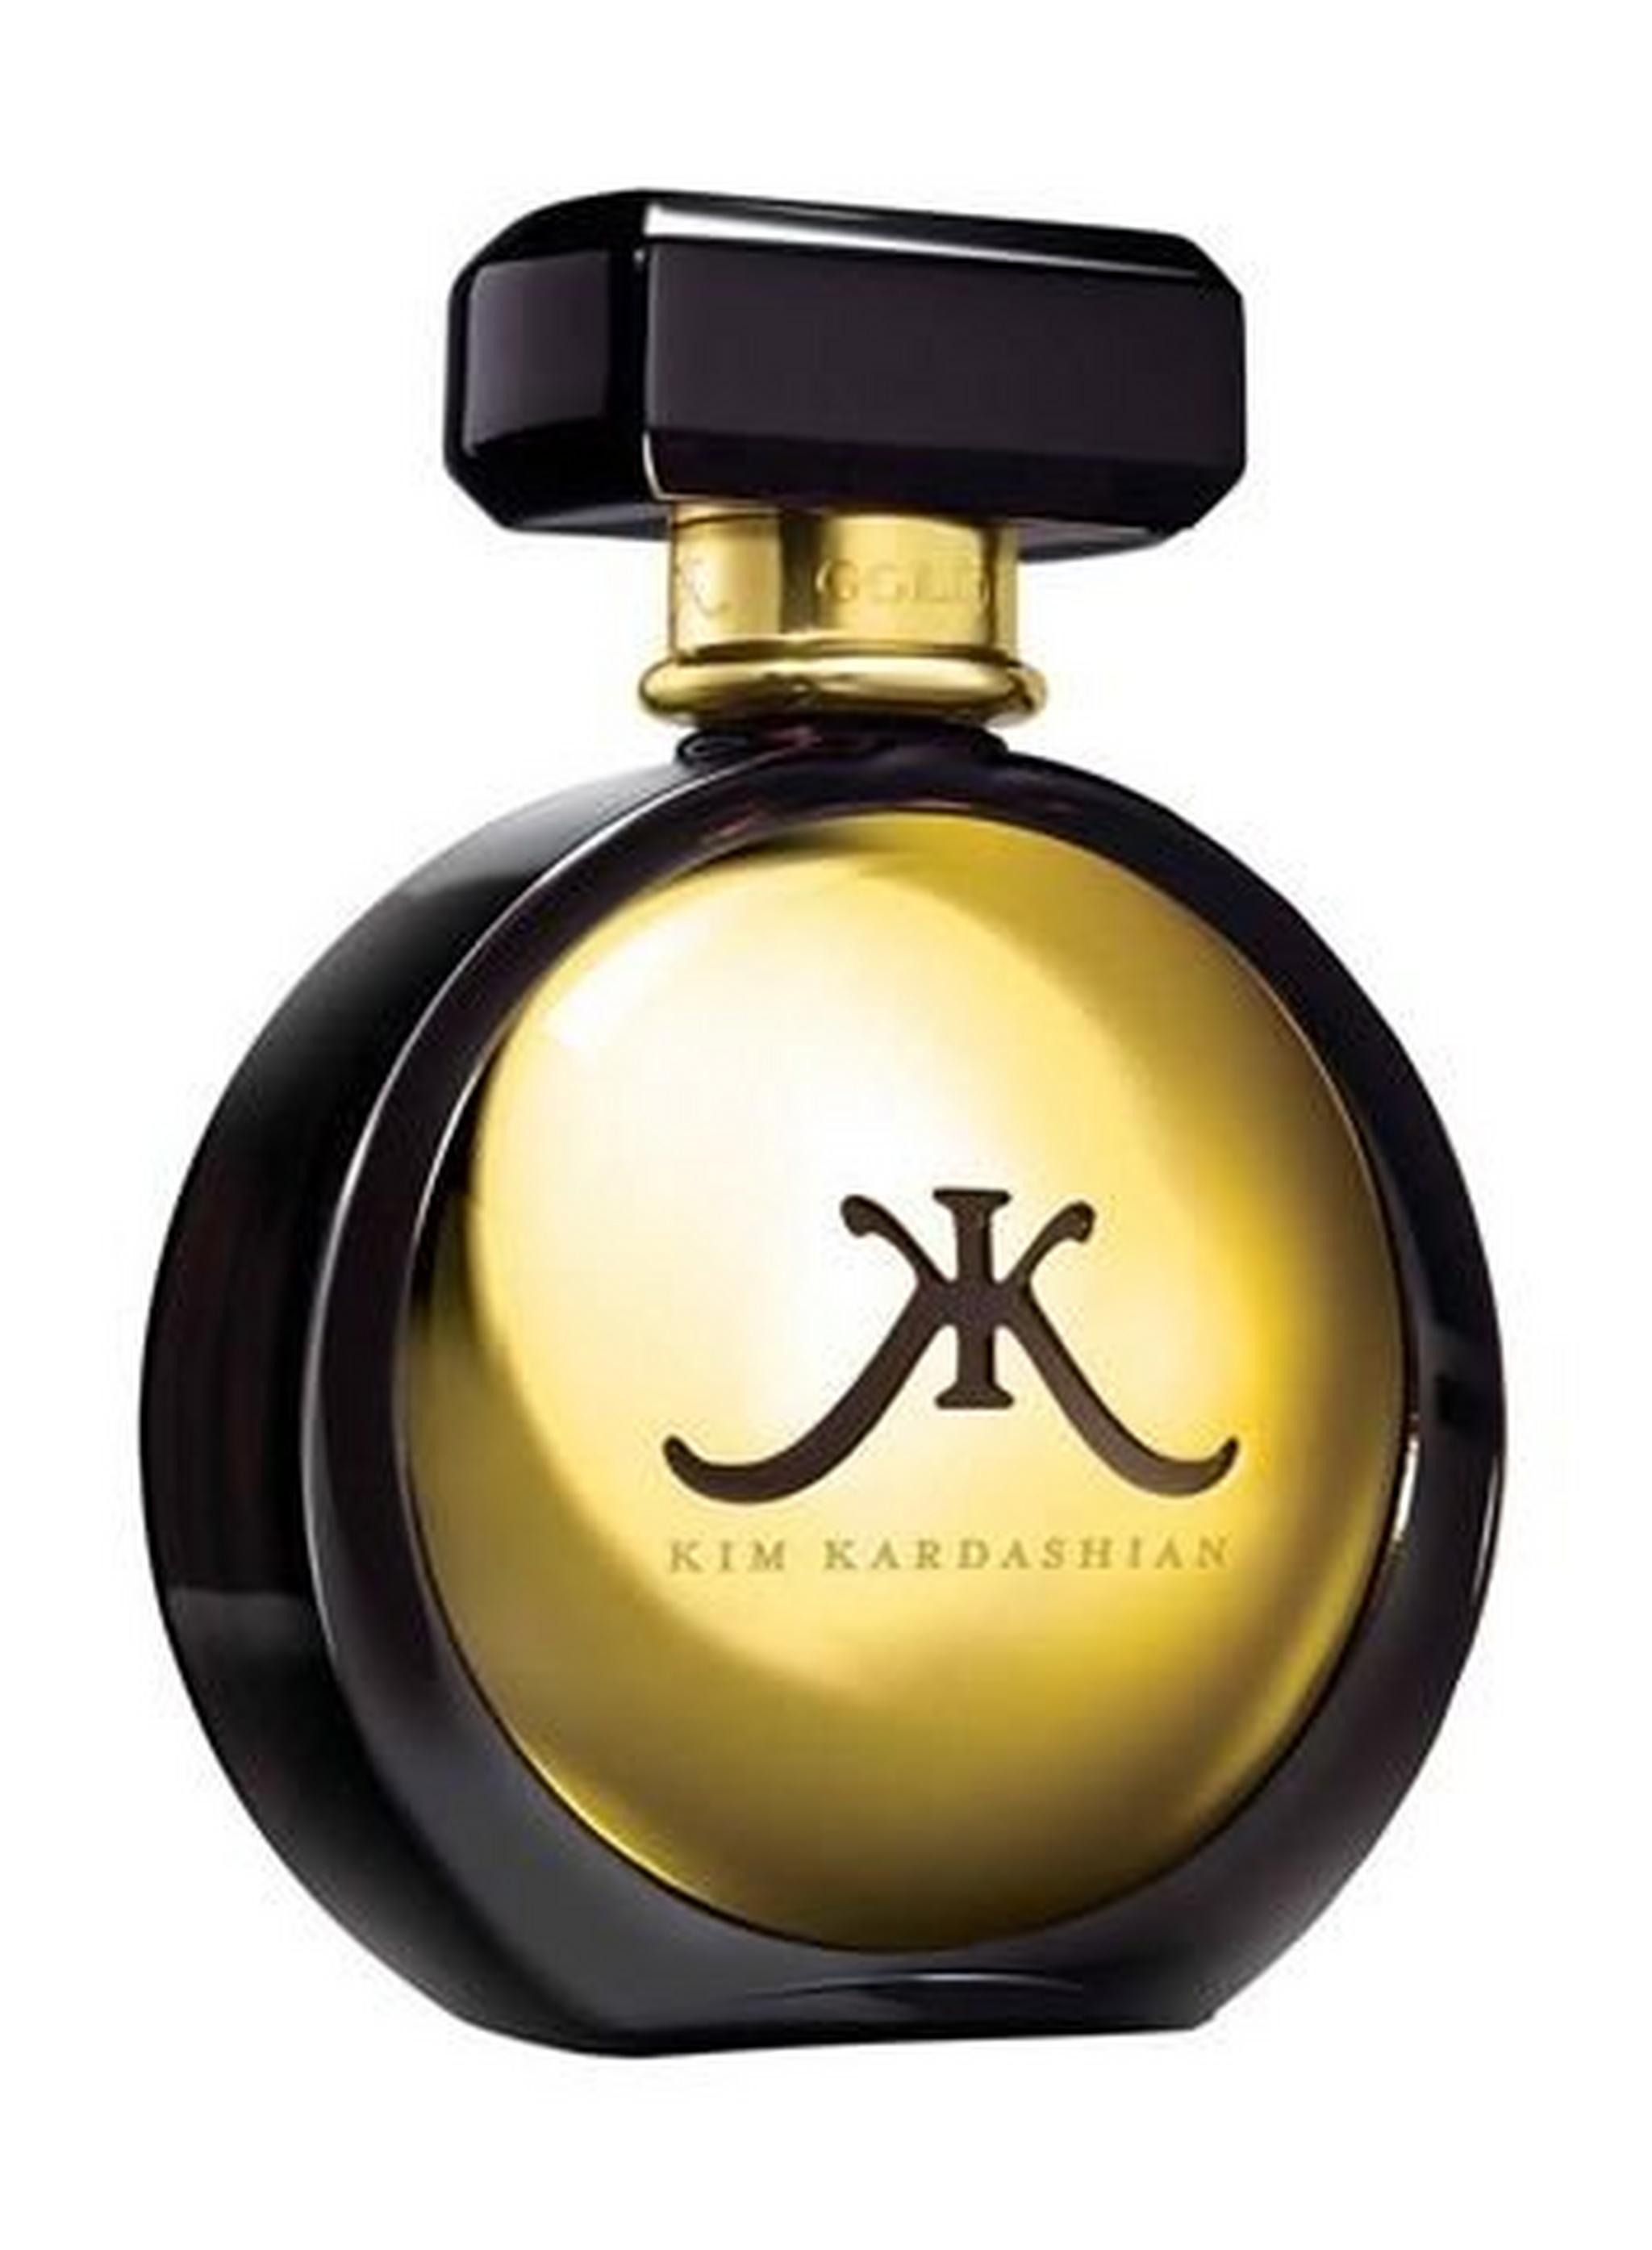 Kim Kardashian Gold  For Women 100 ML Eau de Parfum